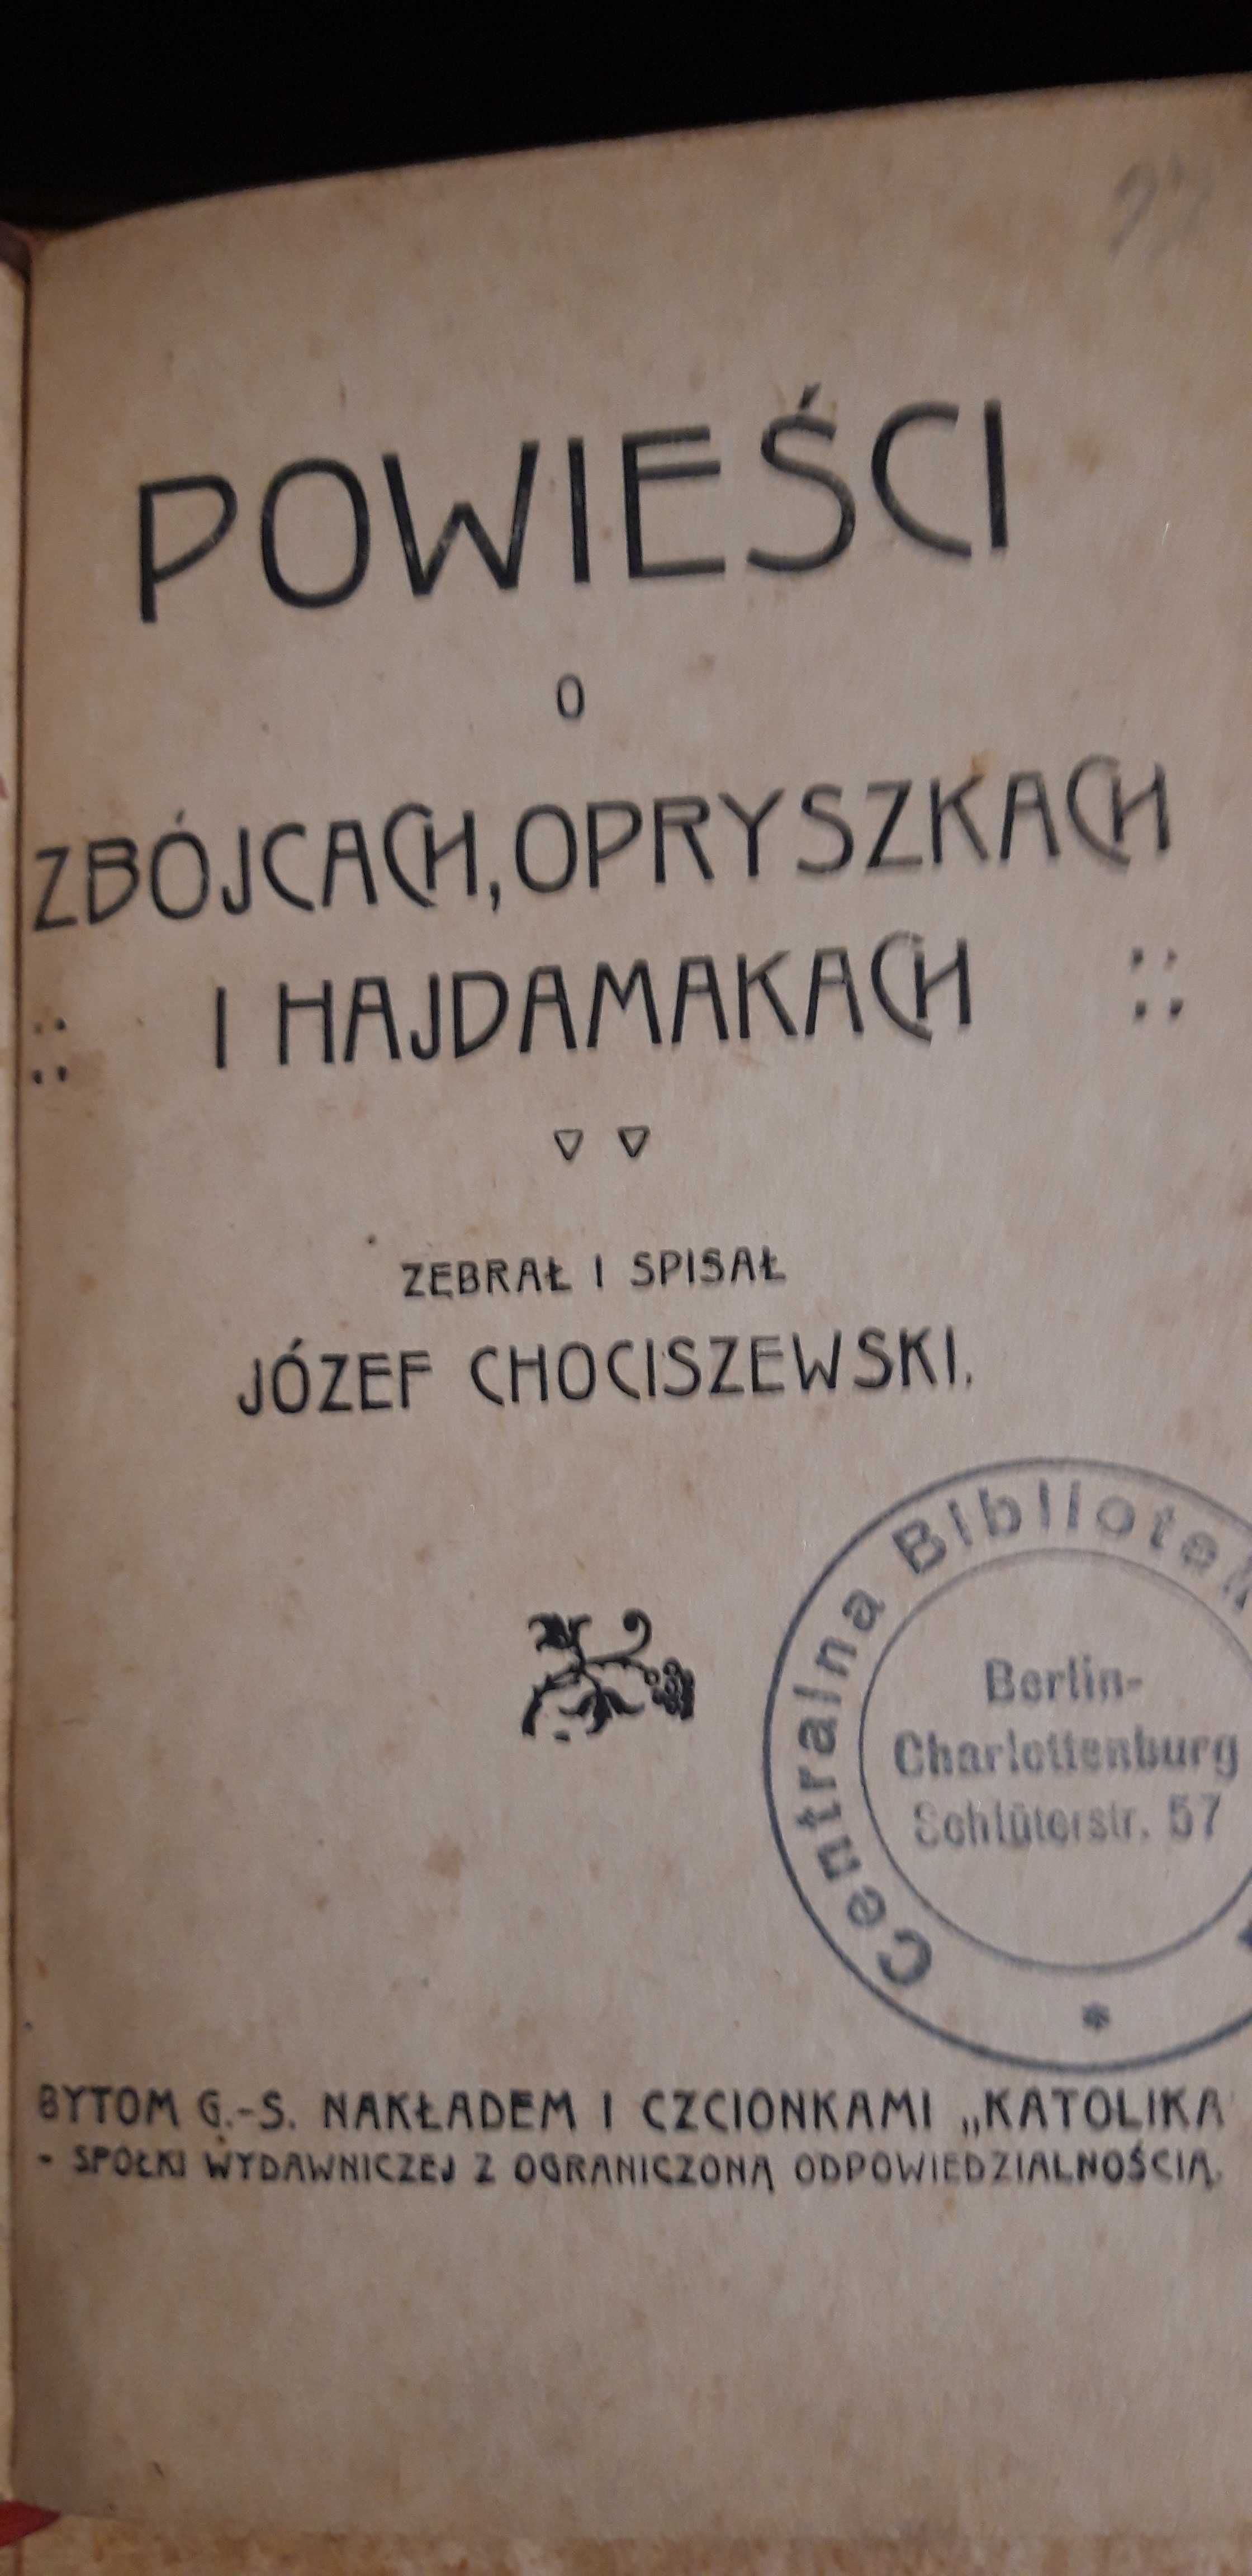 Powieści o Zbójcach,Opryszkach i Hajdamakach -Chociszewski- 1910